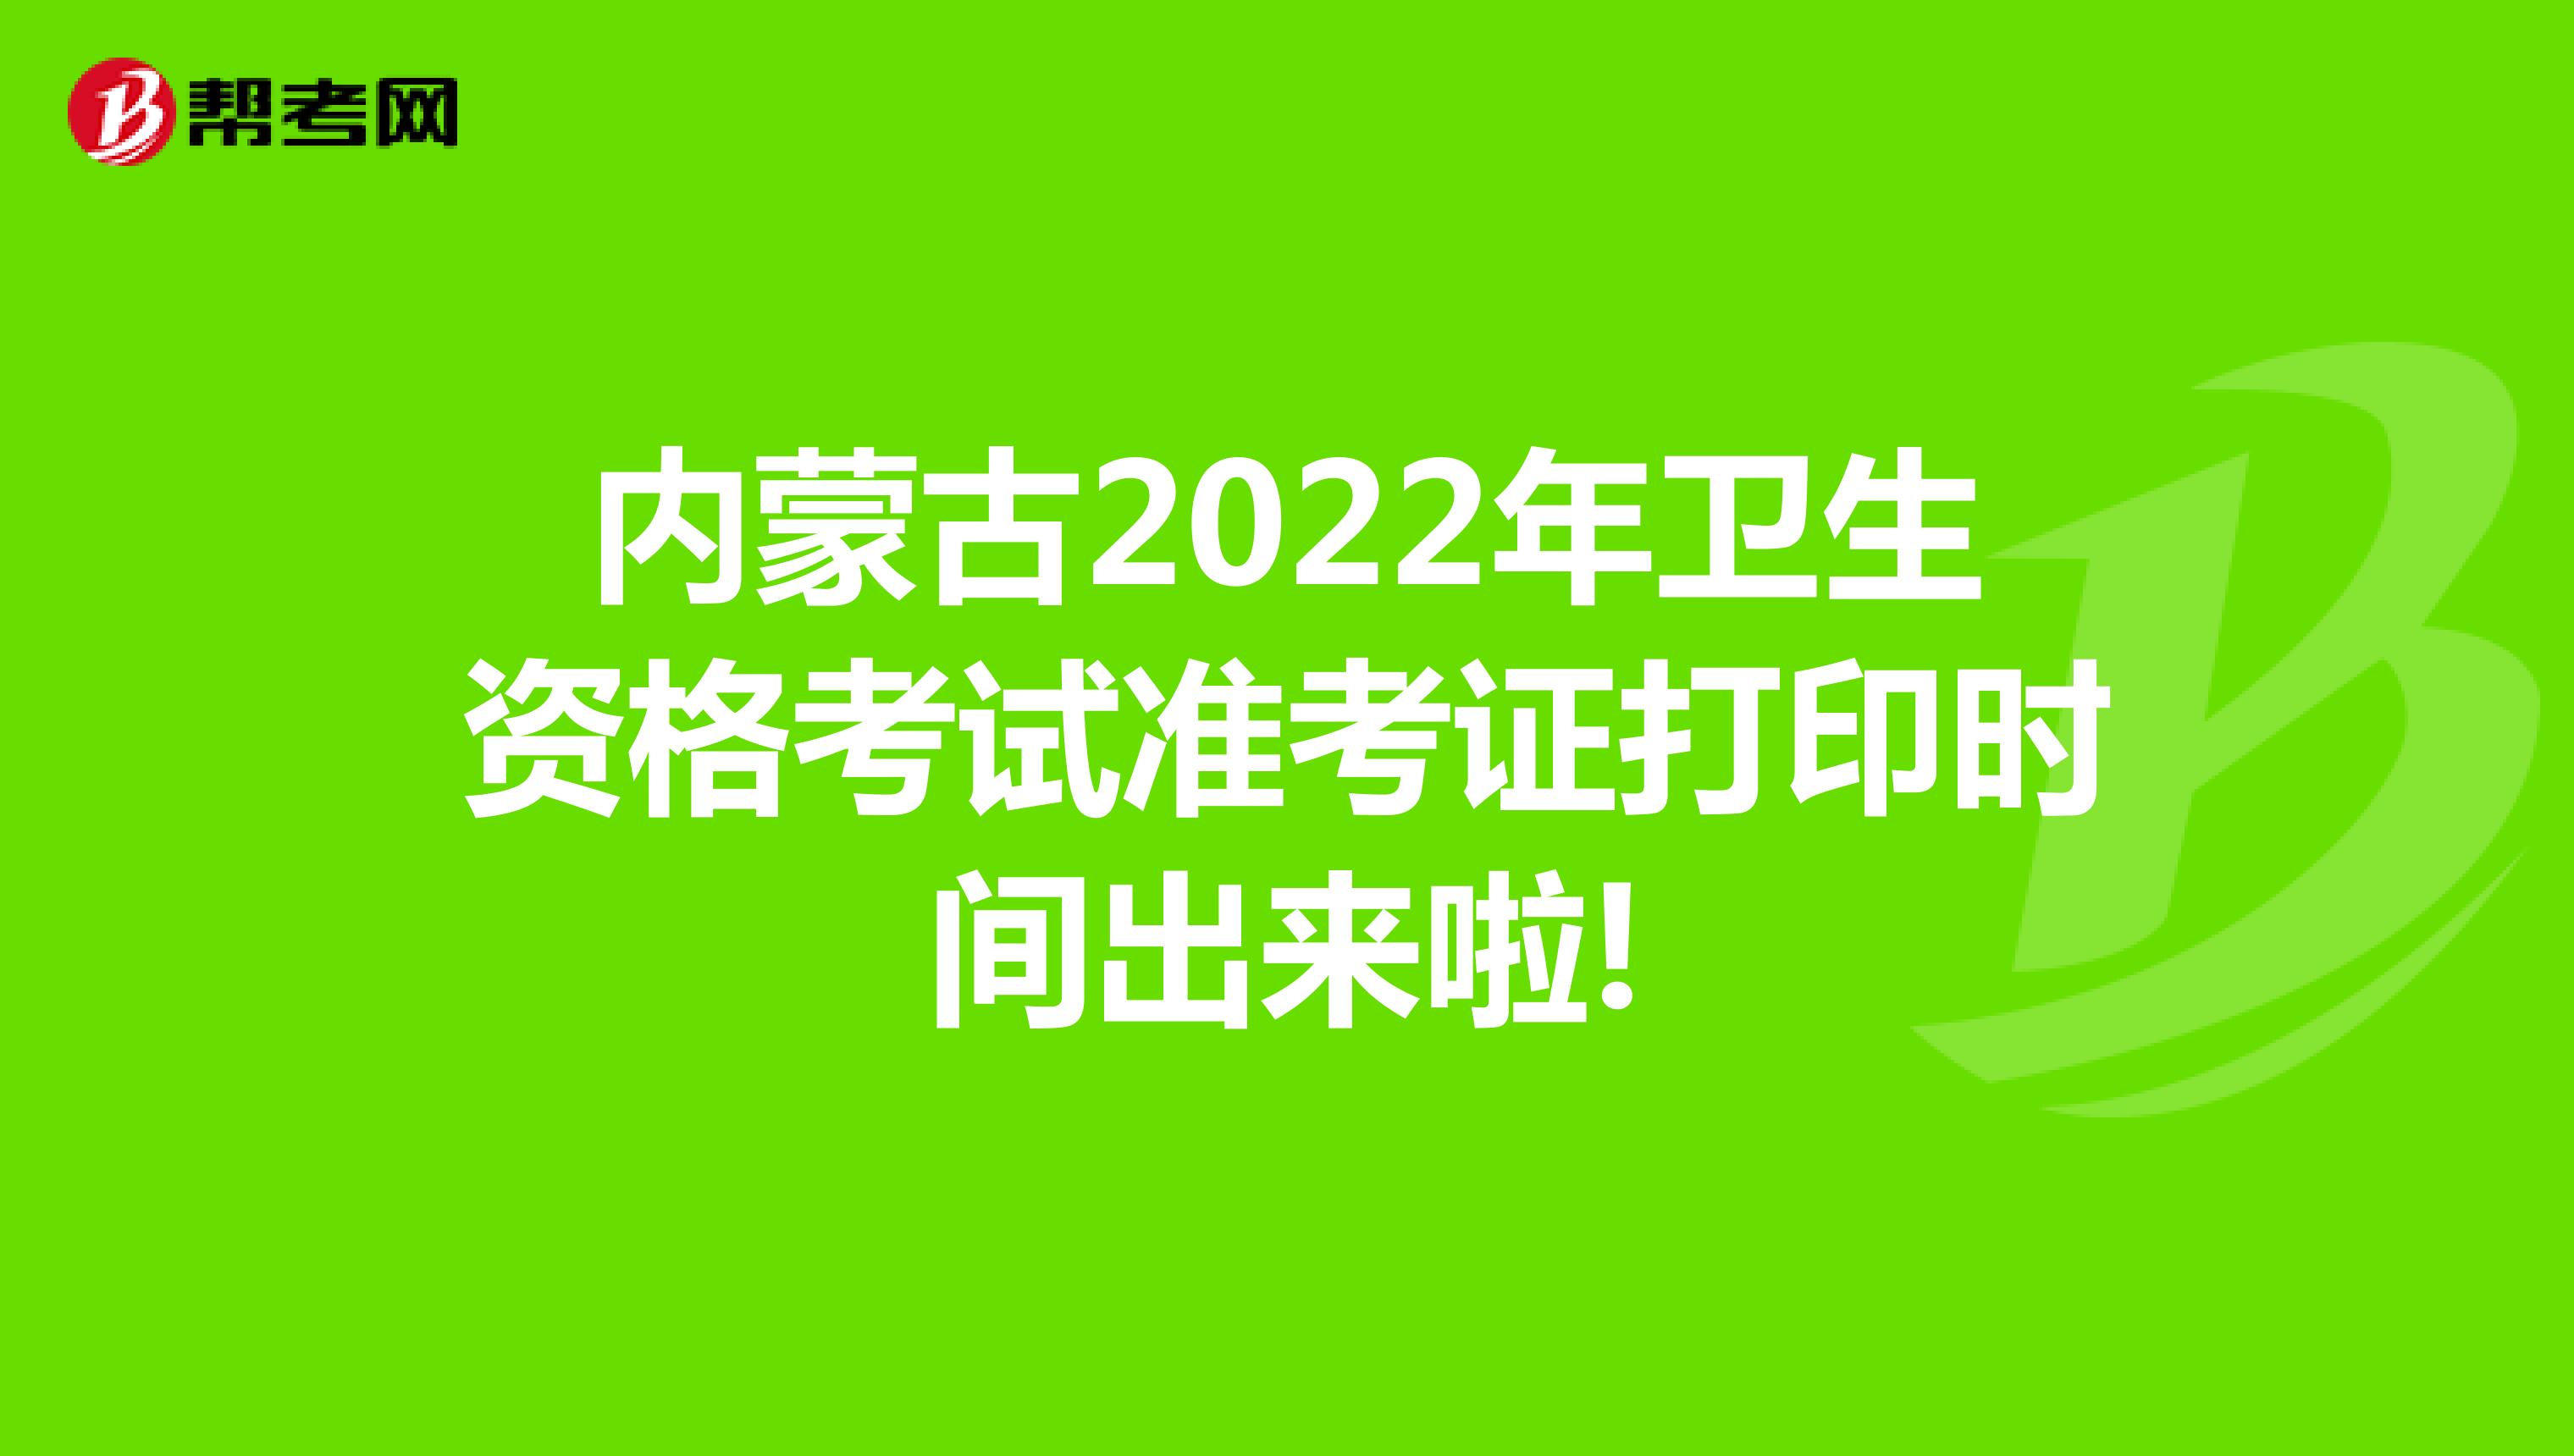 内蒙古2022年卫生资格考试准考证打印时间出来啦!